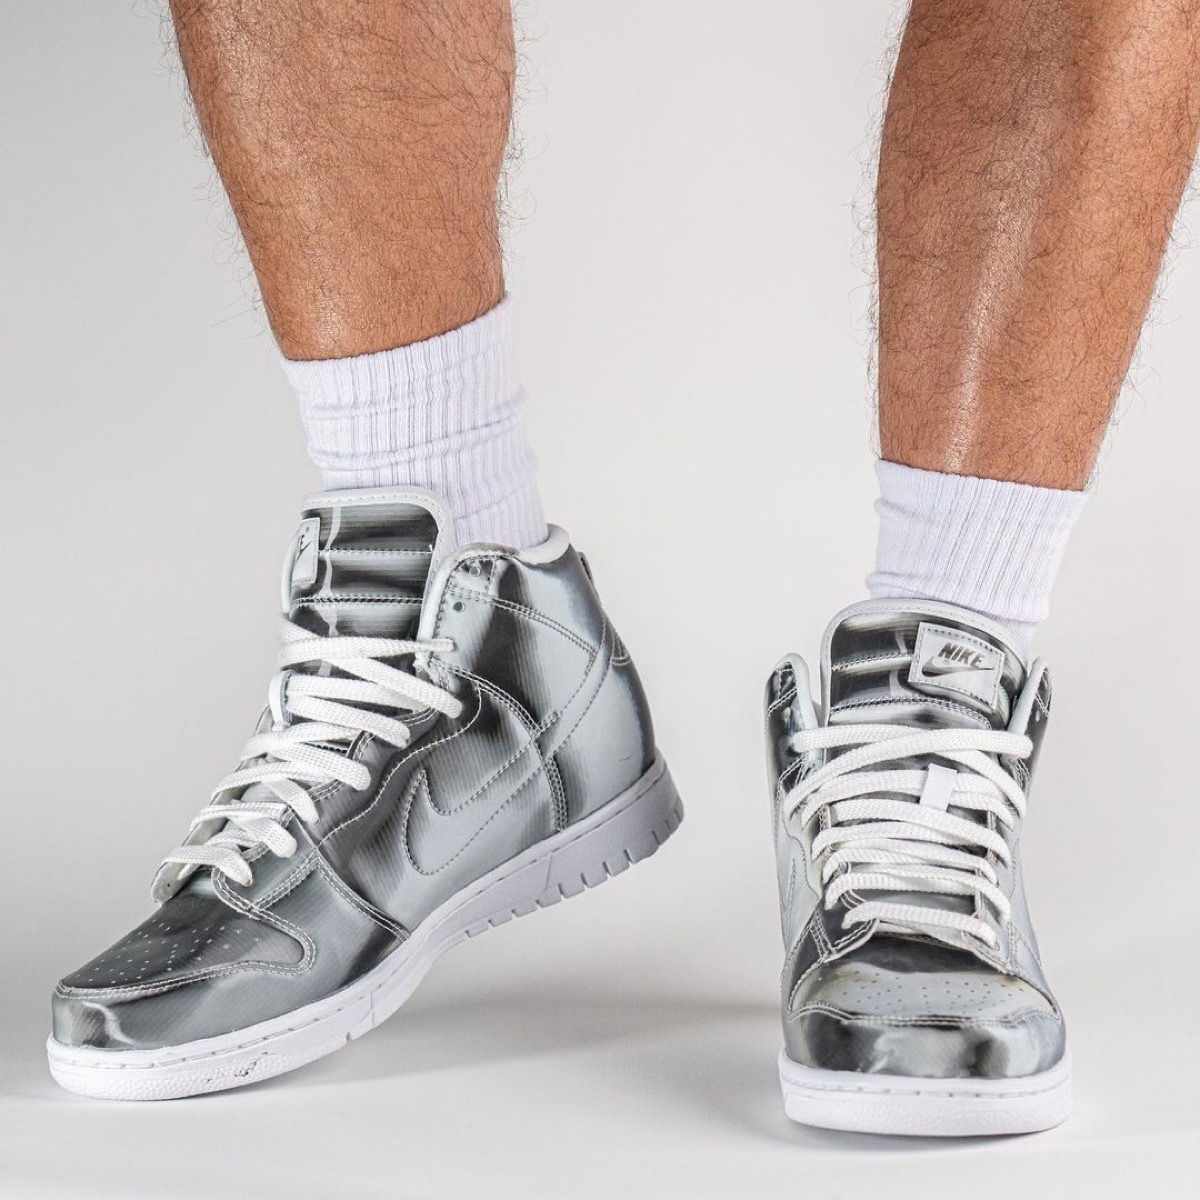 CLOT × Nike Dunk High "Silver" 26.5cm